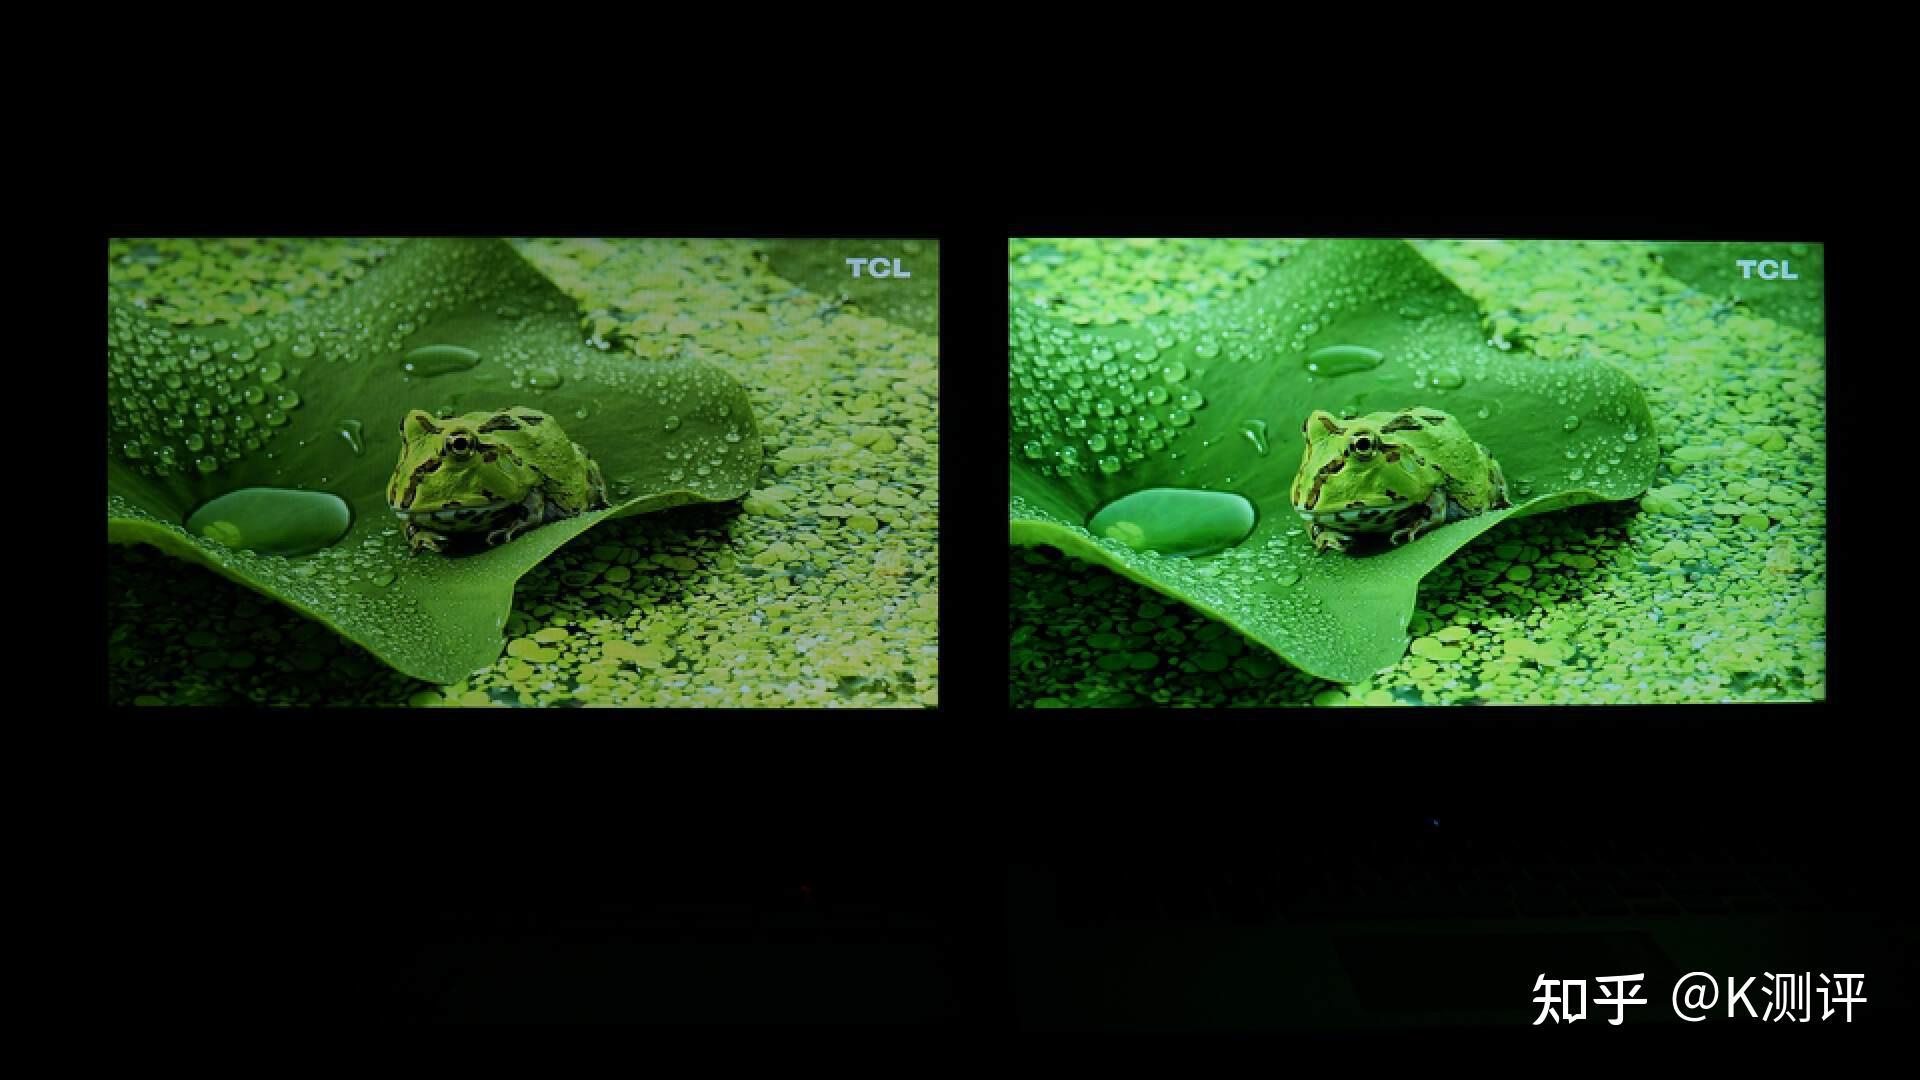 屏幕颜色与matepadpro有明显差异，肉眼看偏黄 - 华为P40系列晒单评测 花粉俱乐部